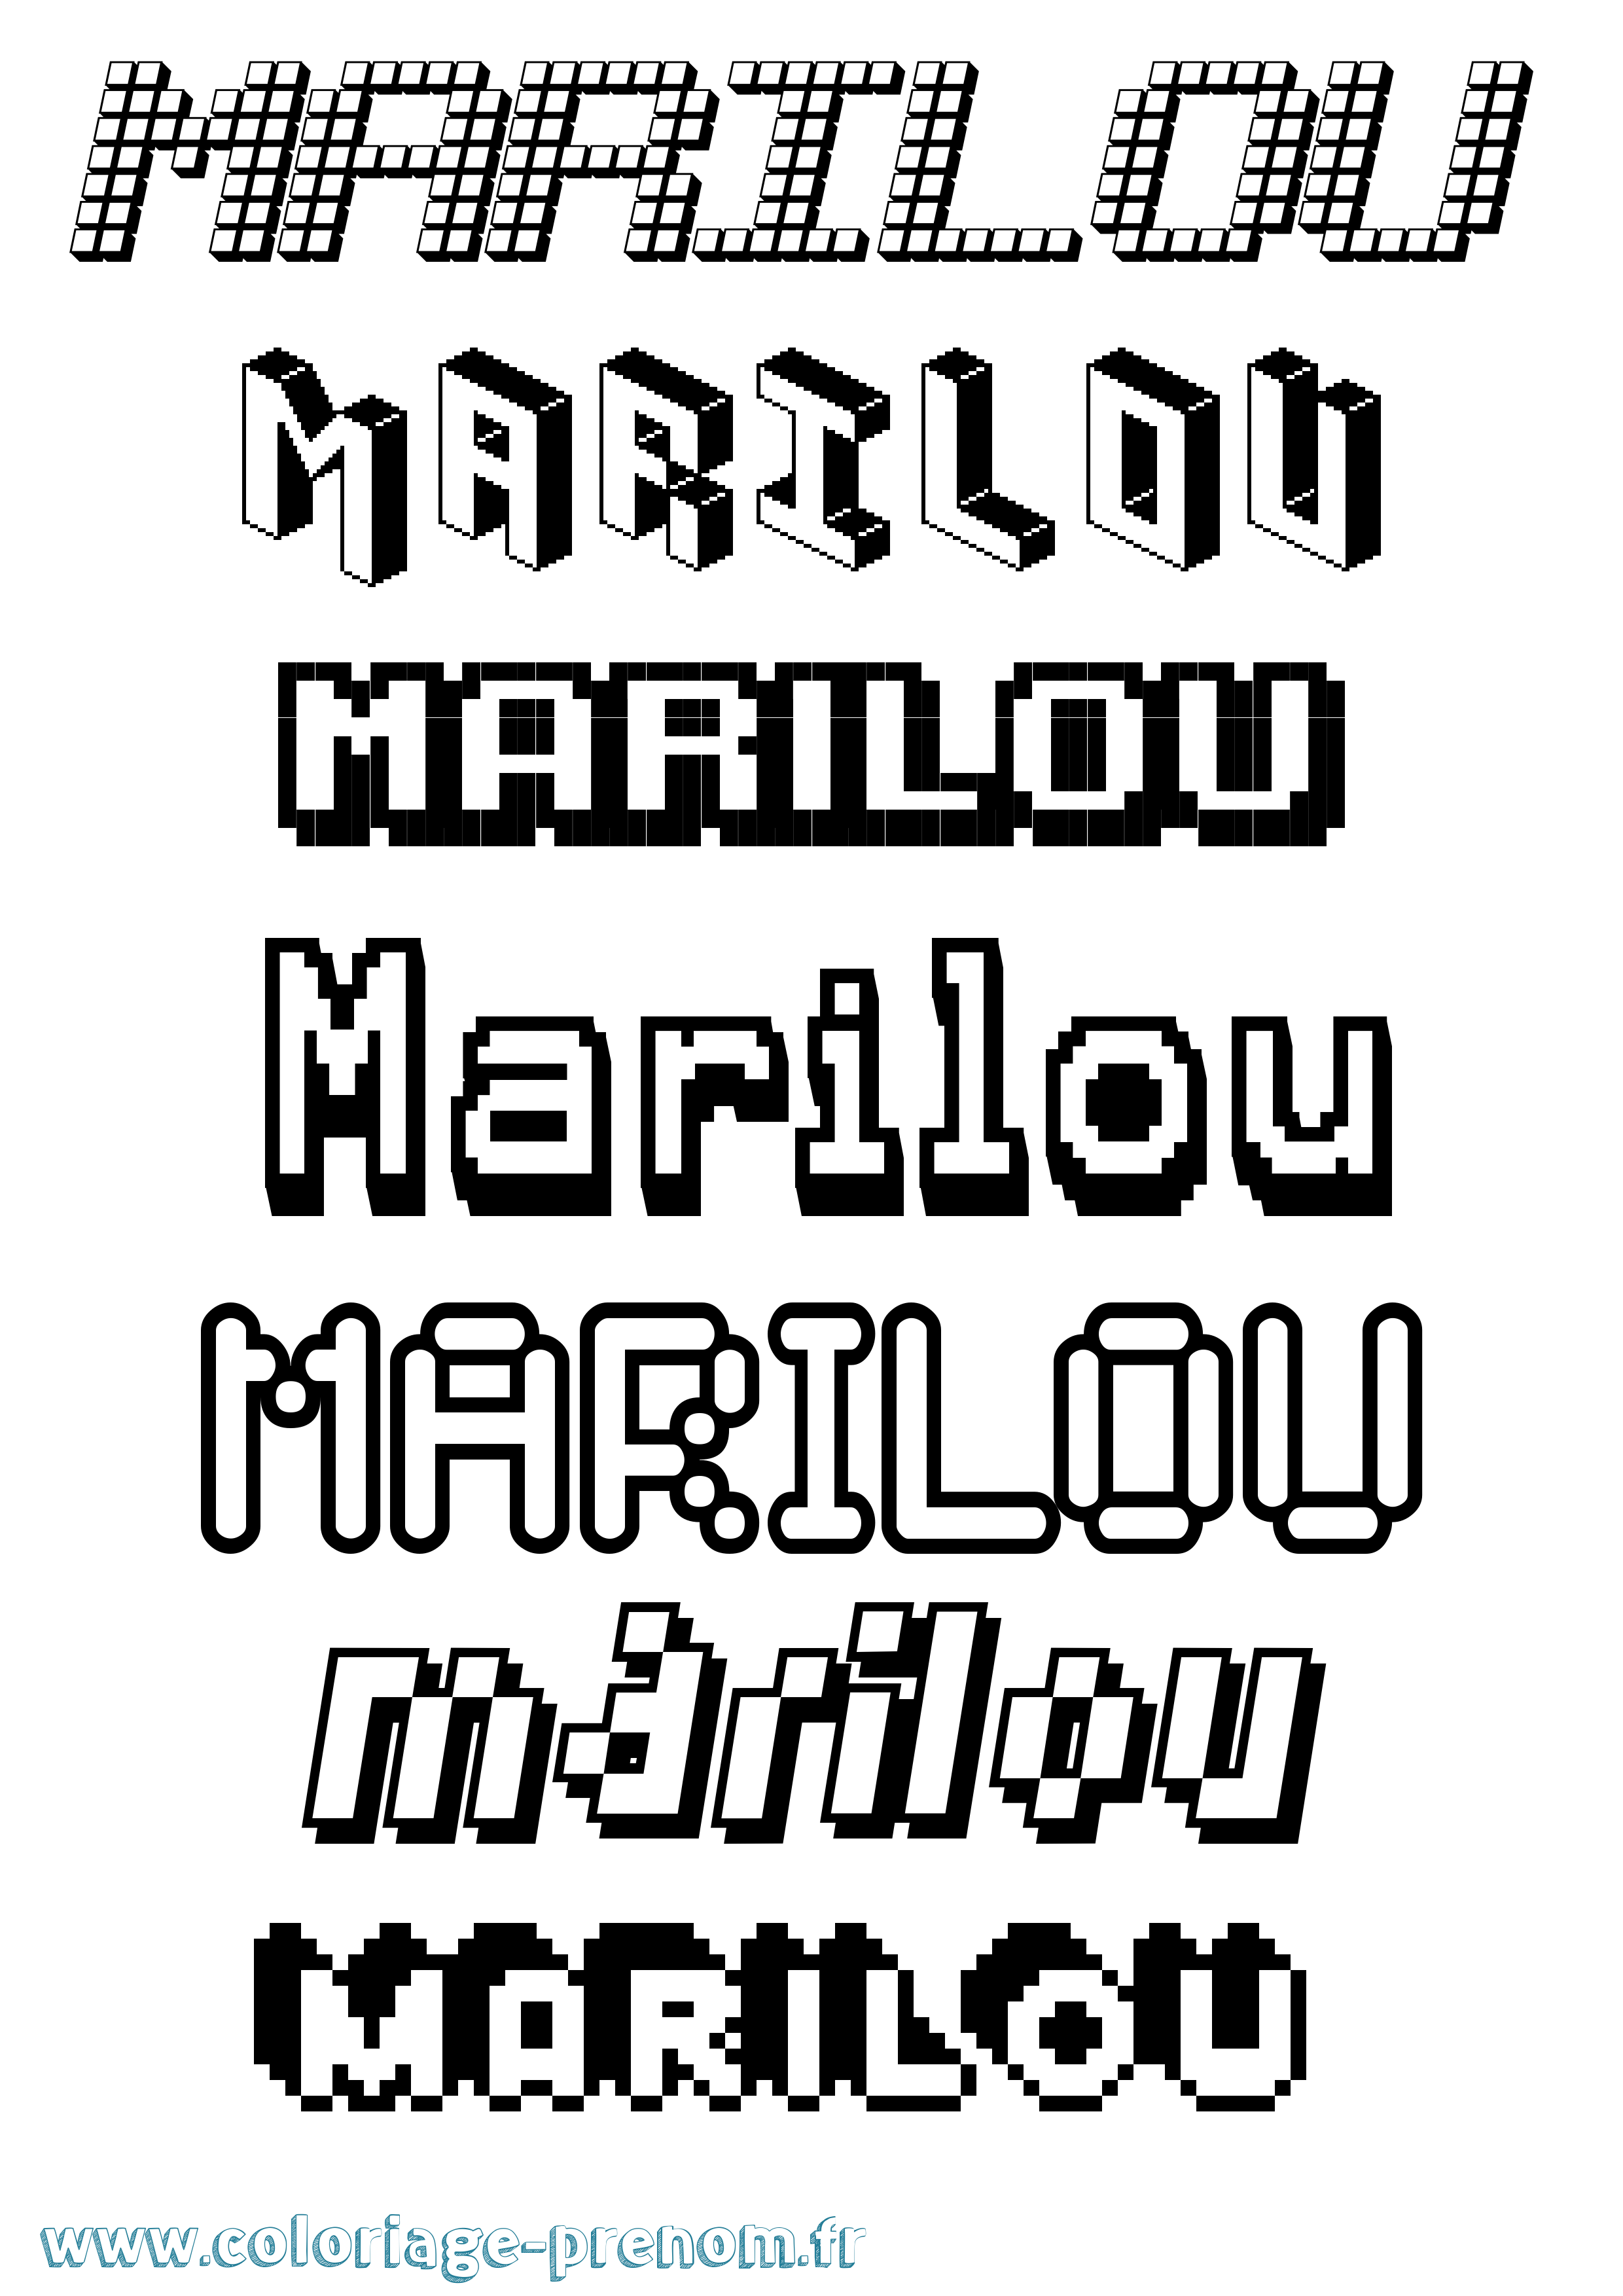 Coloriage prénom Marilou Pixel